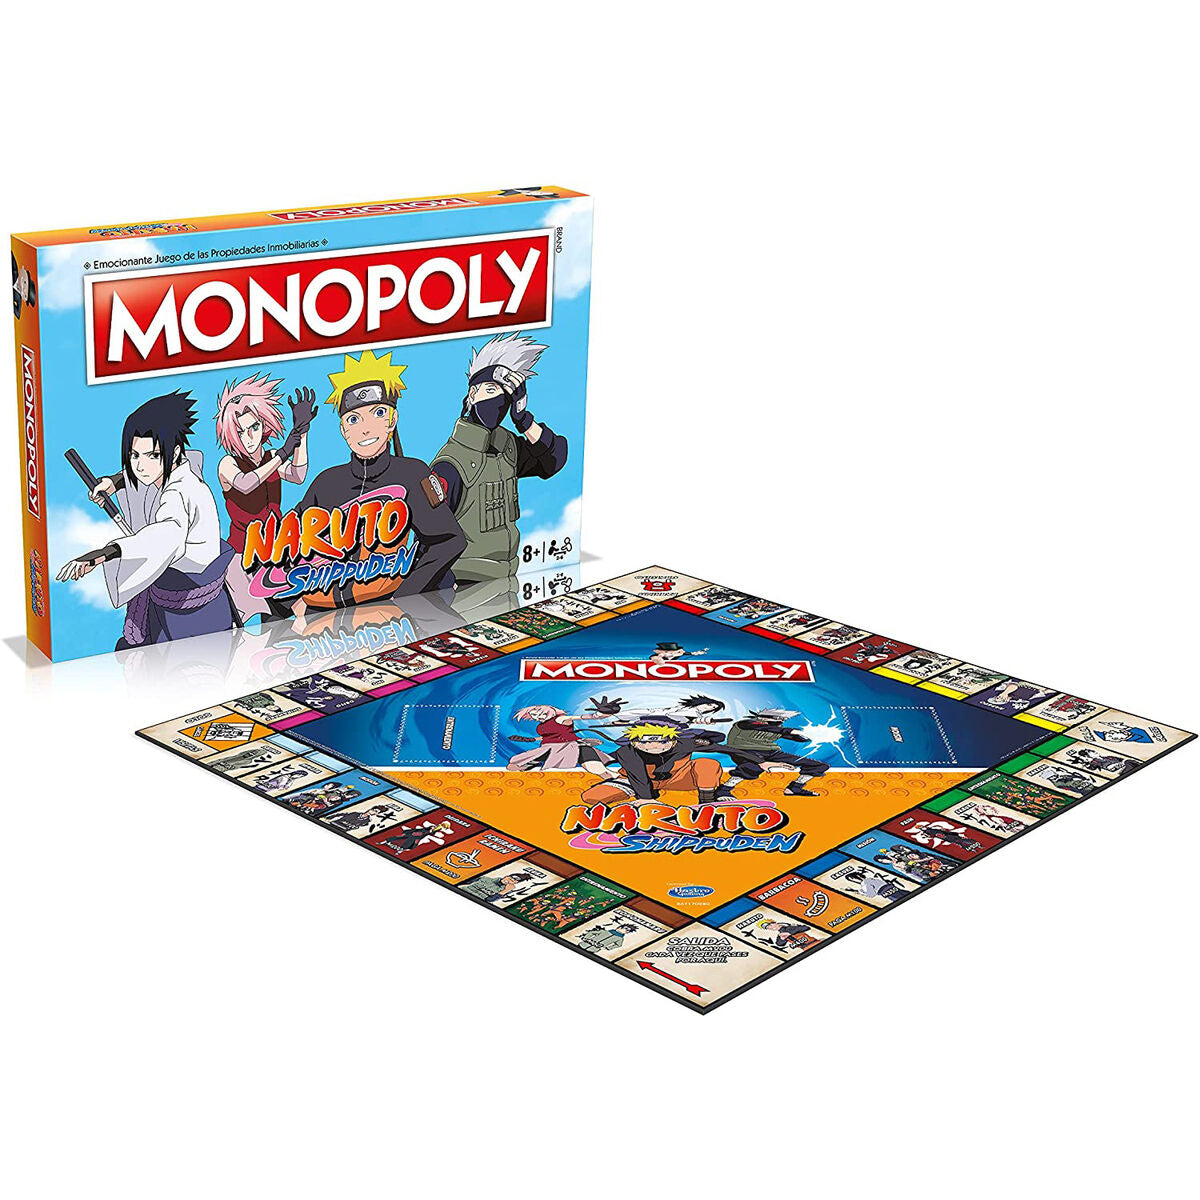 Naruto Shippuden-Monopolspiel